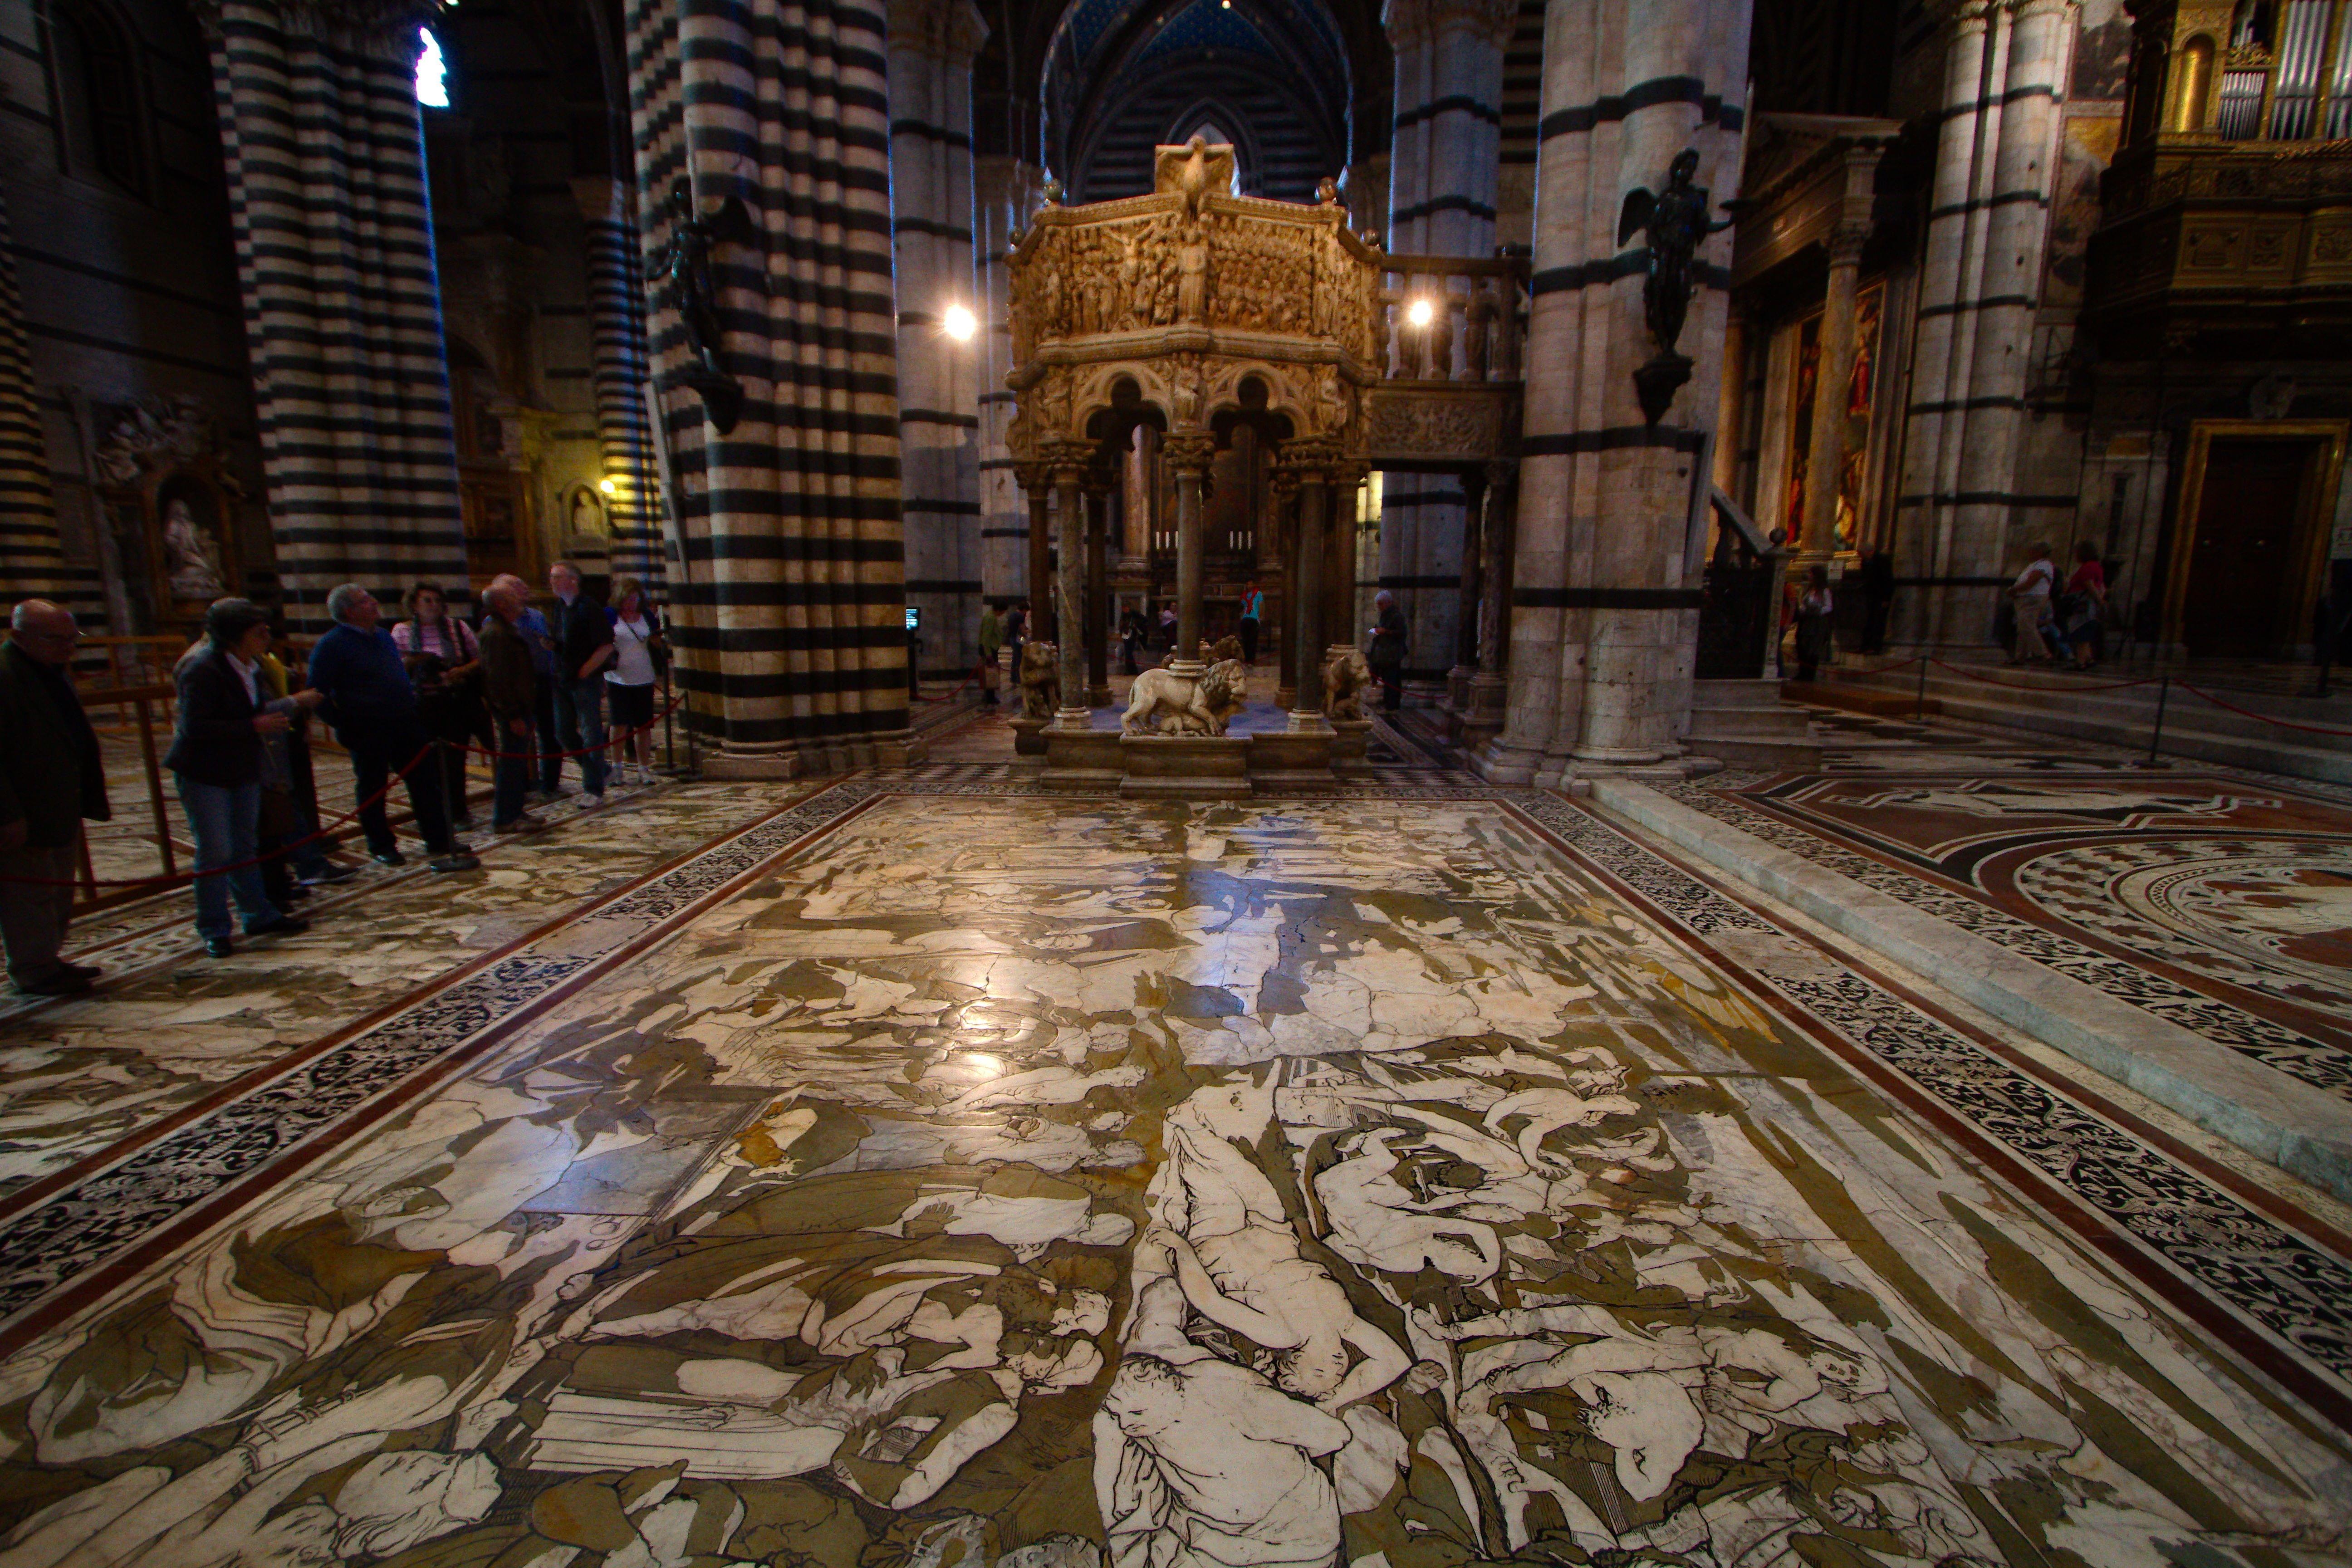 Siena Cathedral Floor